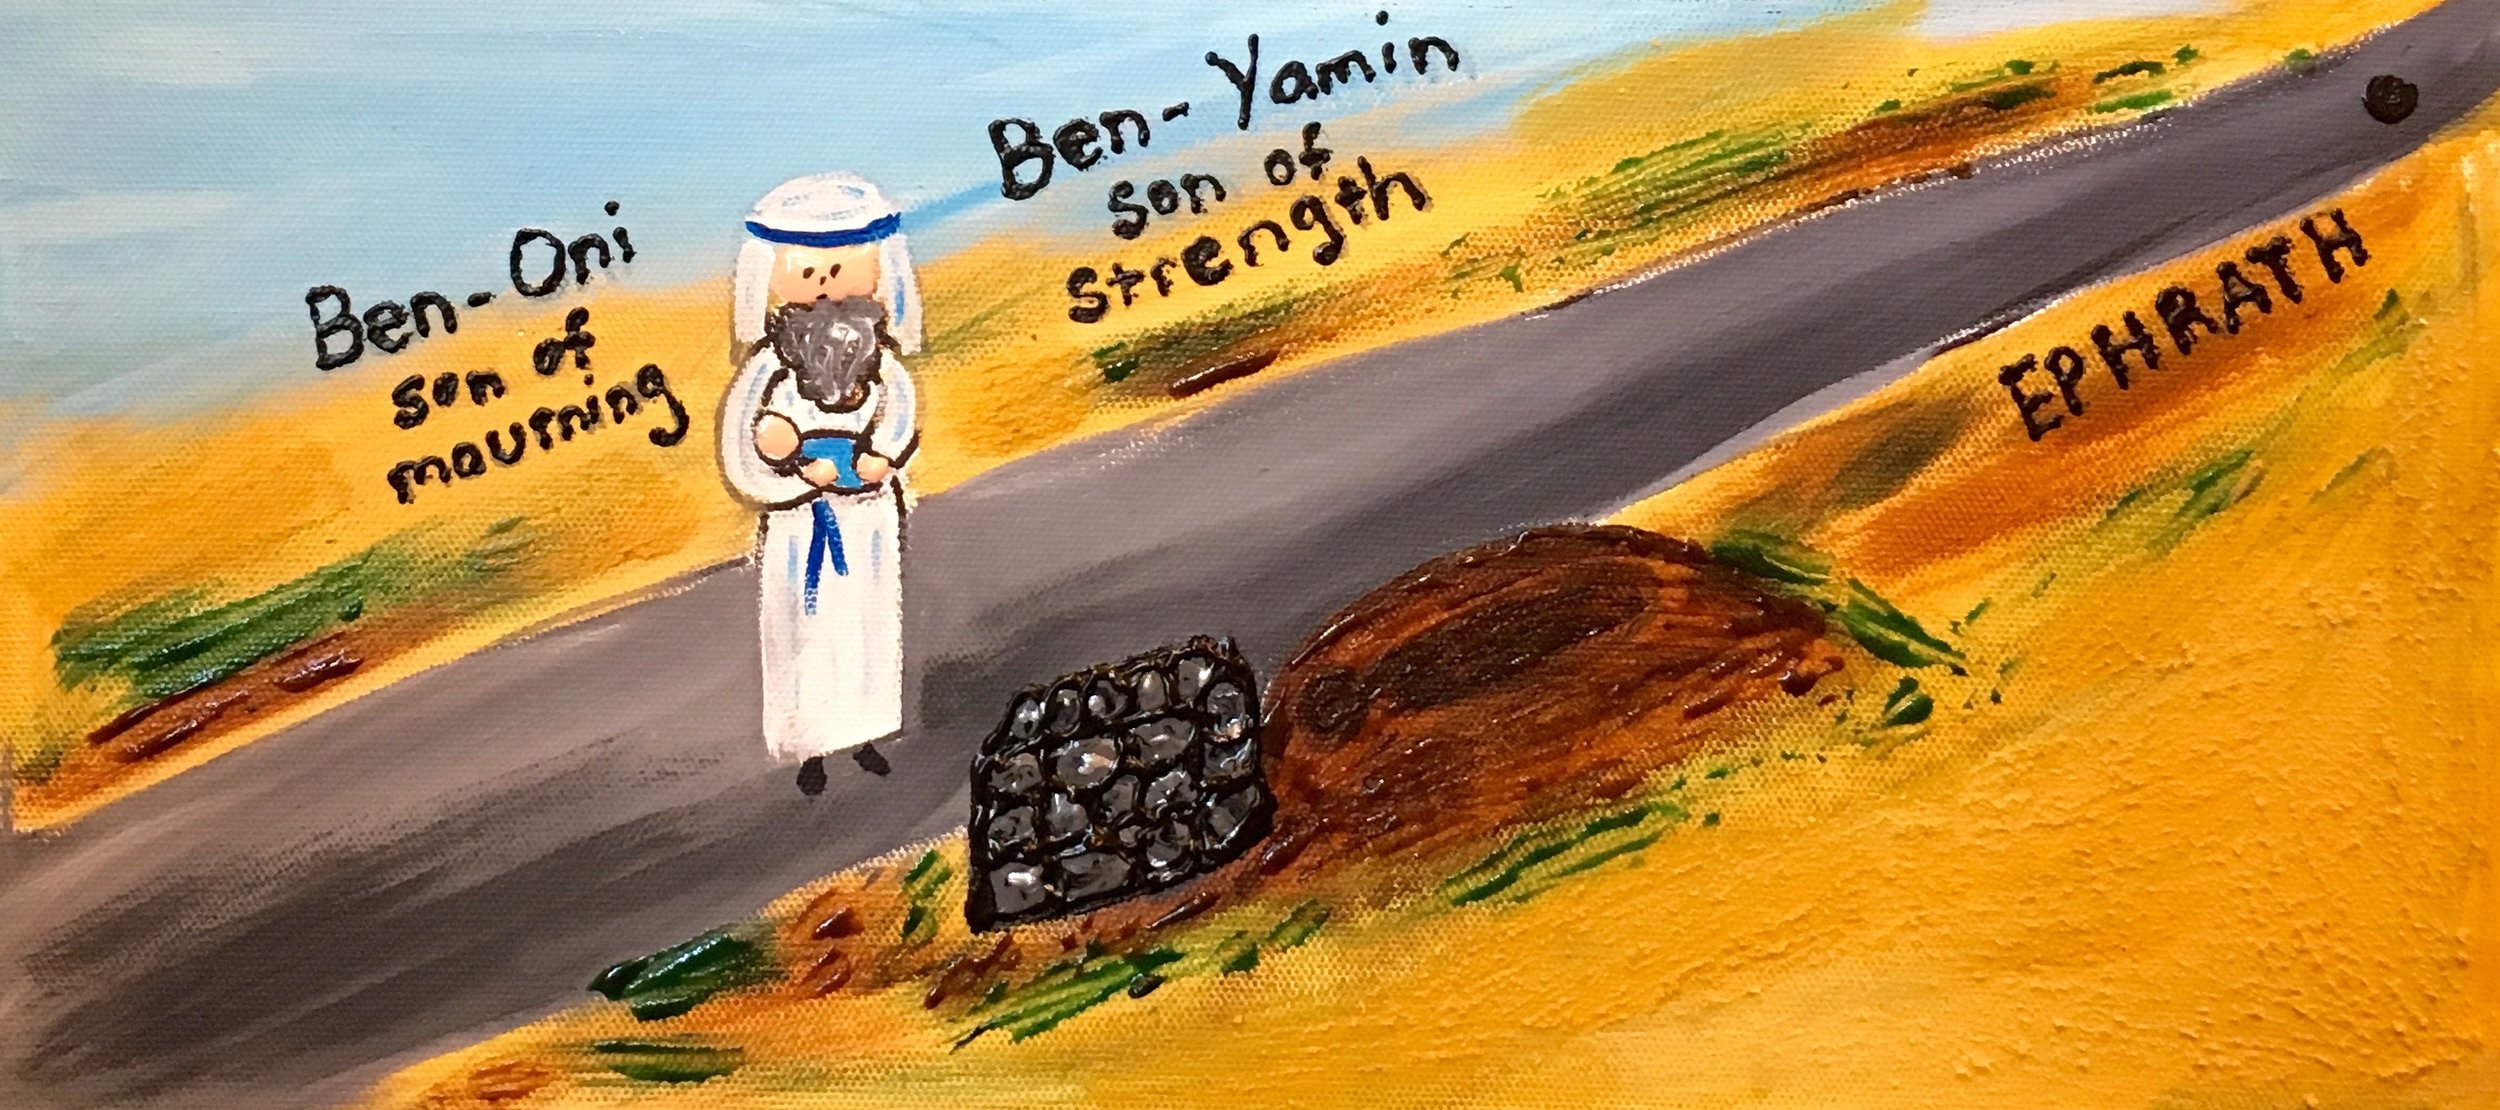 Ben-Oni and Ben-Yamin (Sheila Nemtin)